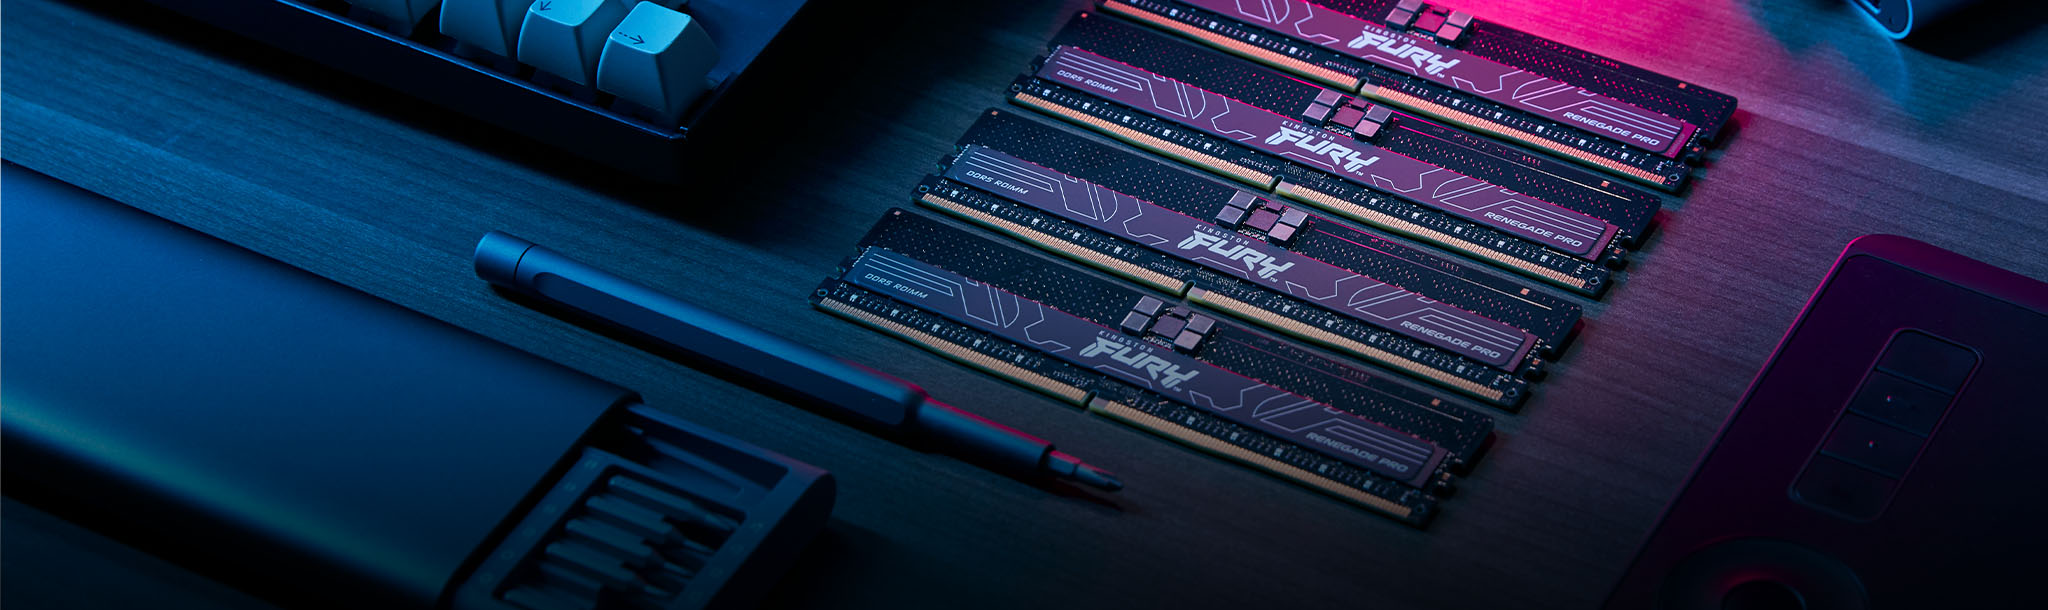 Hình mô tả thanh RAM Kingston FURY Renegade Pro DDR5 RDIMM trong bo mạch chủ, với logo được chứng nhận Intel XMP.